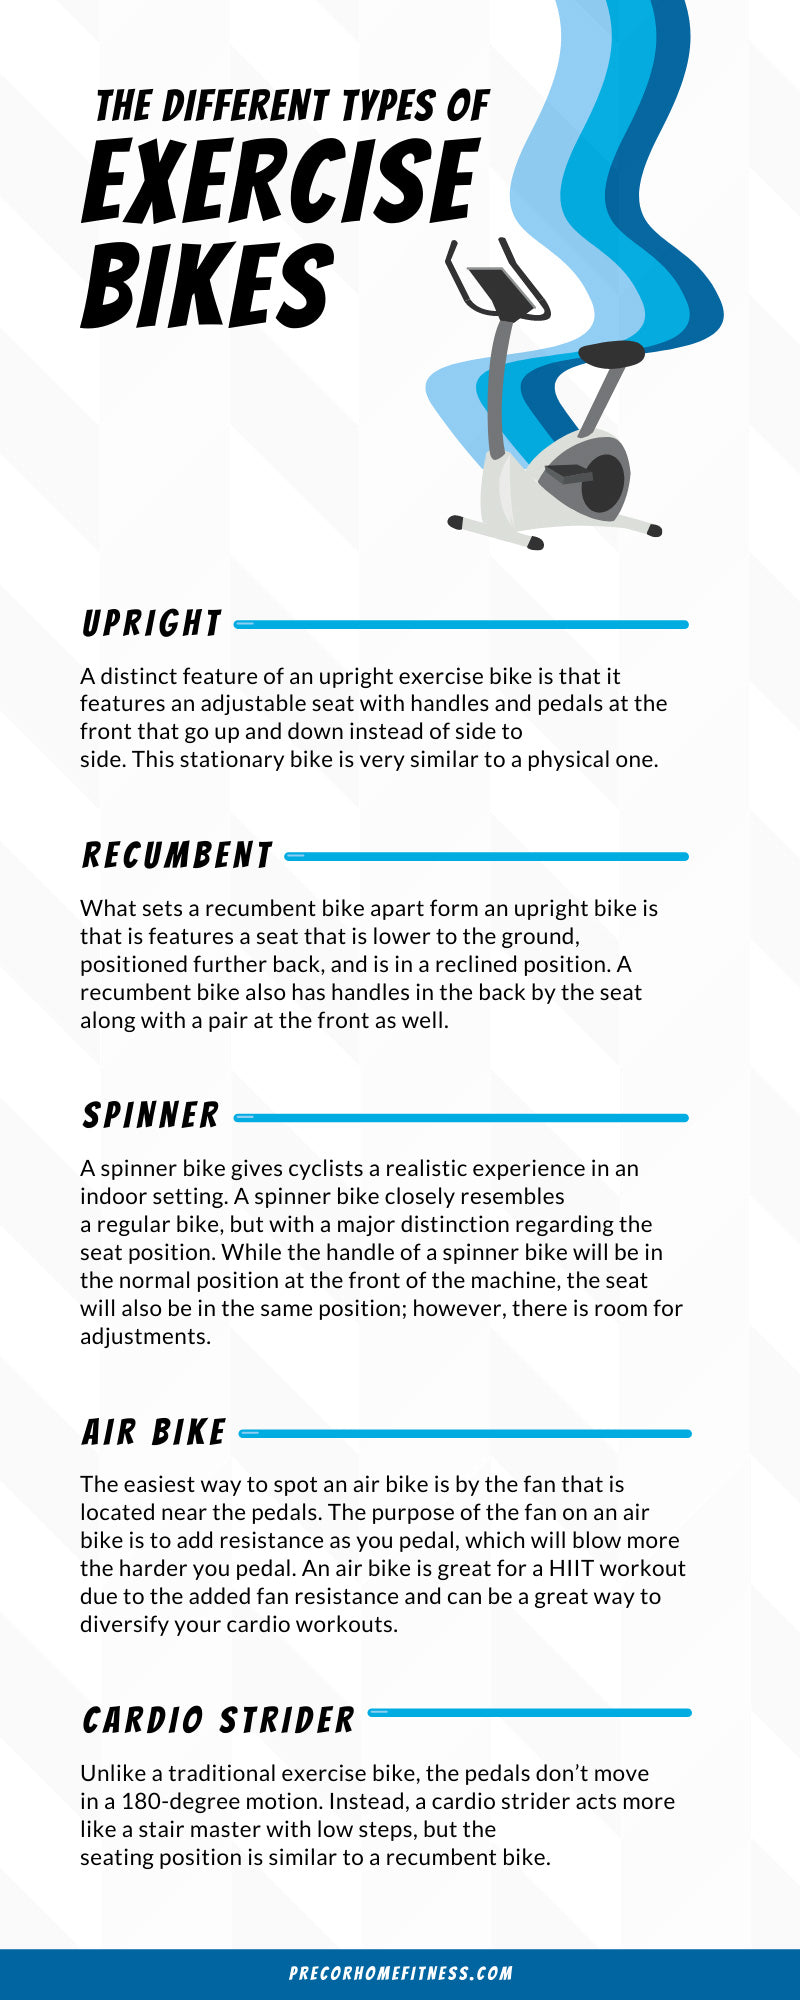 Types of Exercise Bikes